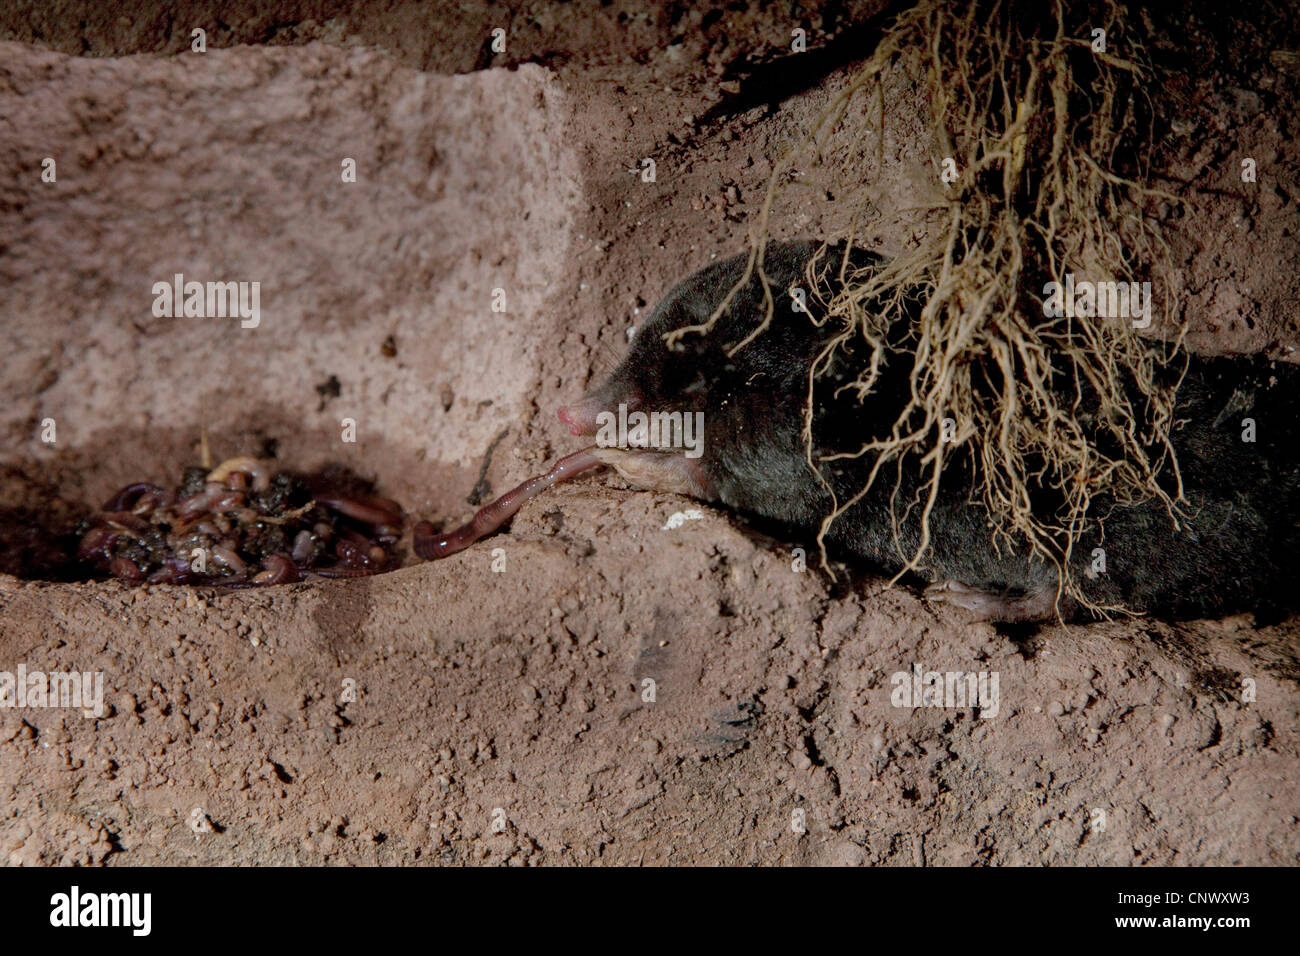 Unione mole (Talpa europaea), alimentazione dal serbatoio di worms in tunnel subterraneous Foto Stock